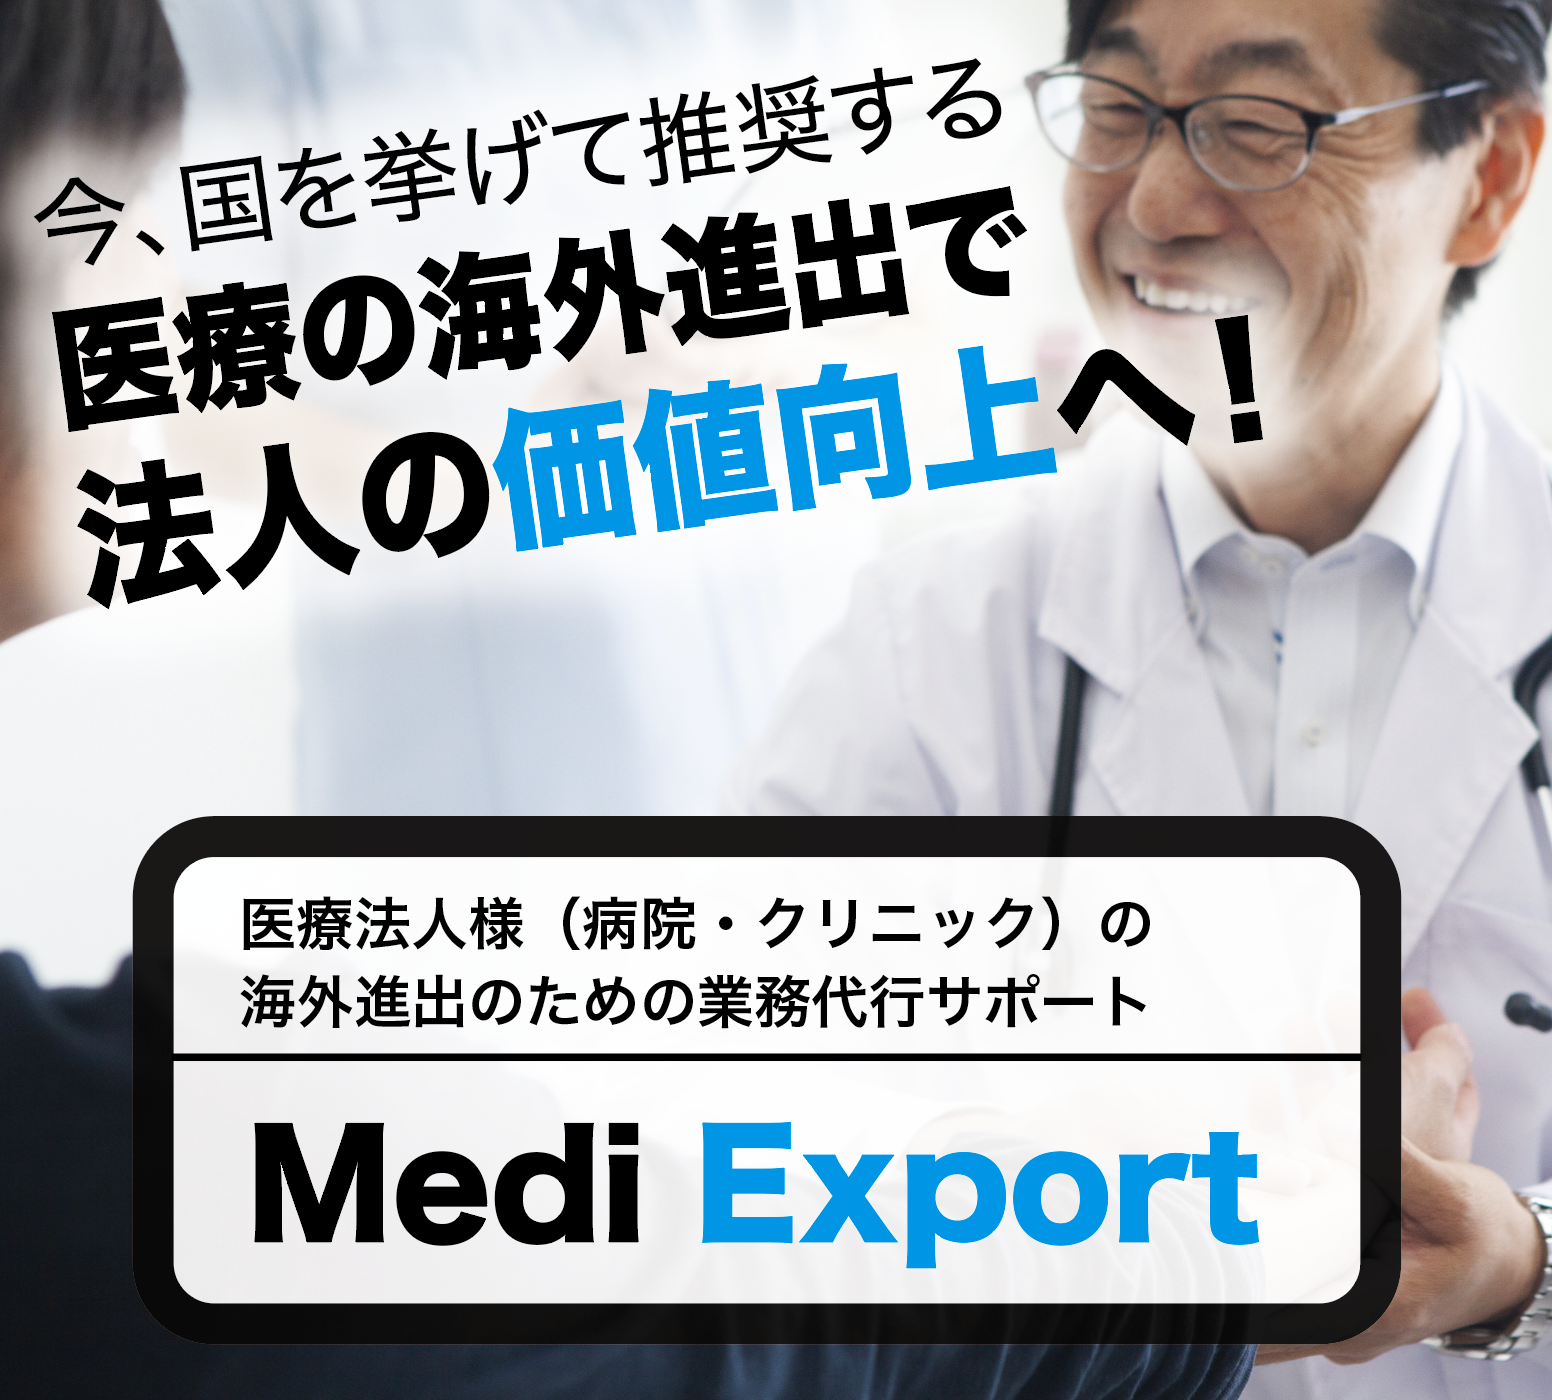 Medi Export